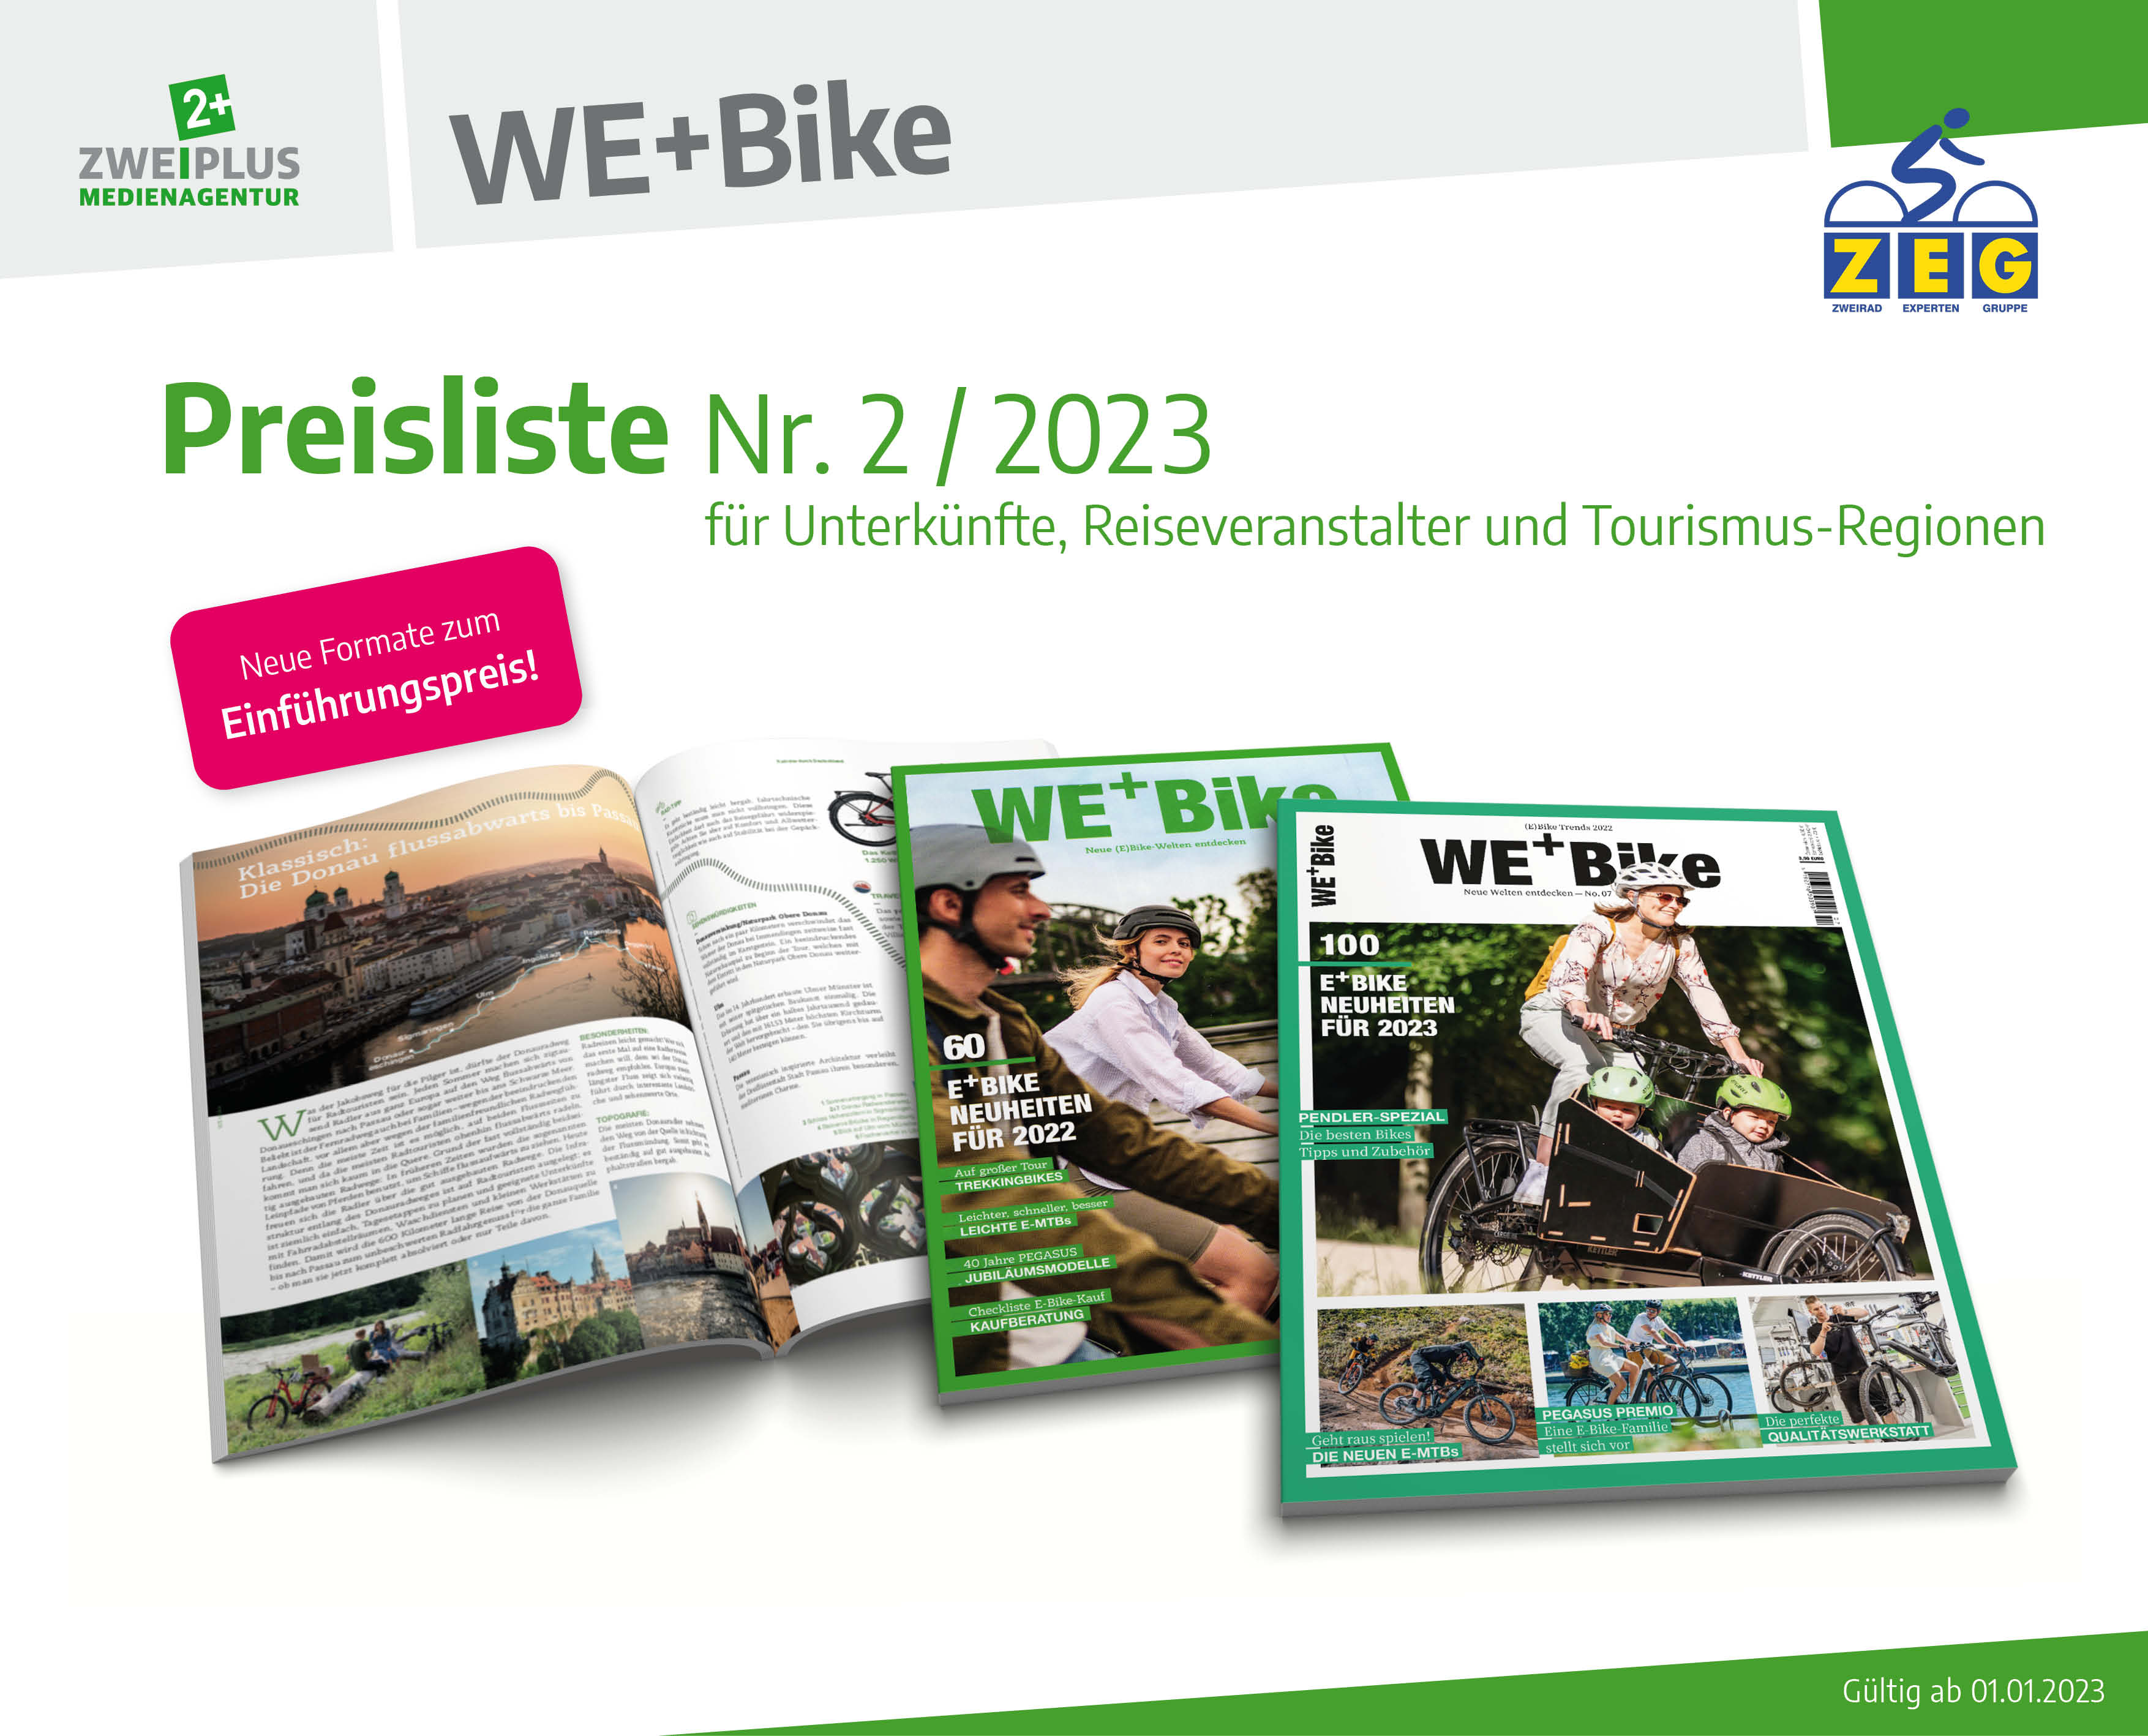 We+Bike Mediadaten, Zweiplus Medienagentur, ZEG, Radwelt